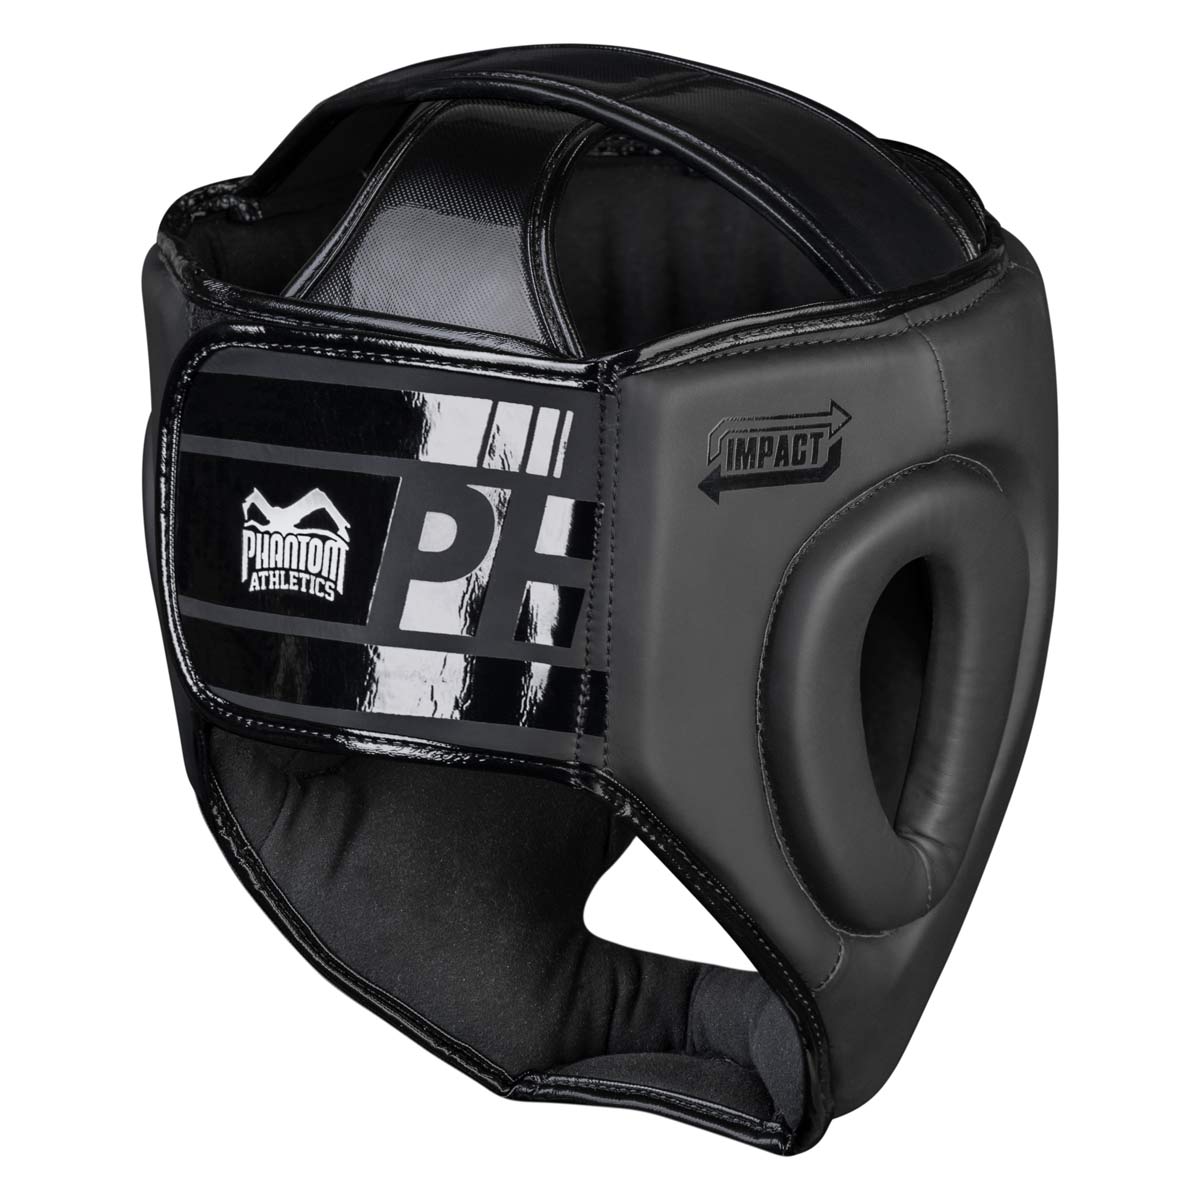 Der Phantom APEX Full Face Kopfschutz in der Rückansicht, mit großem Klettverschluss für optimalen Halt.